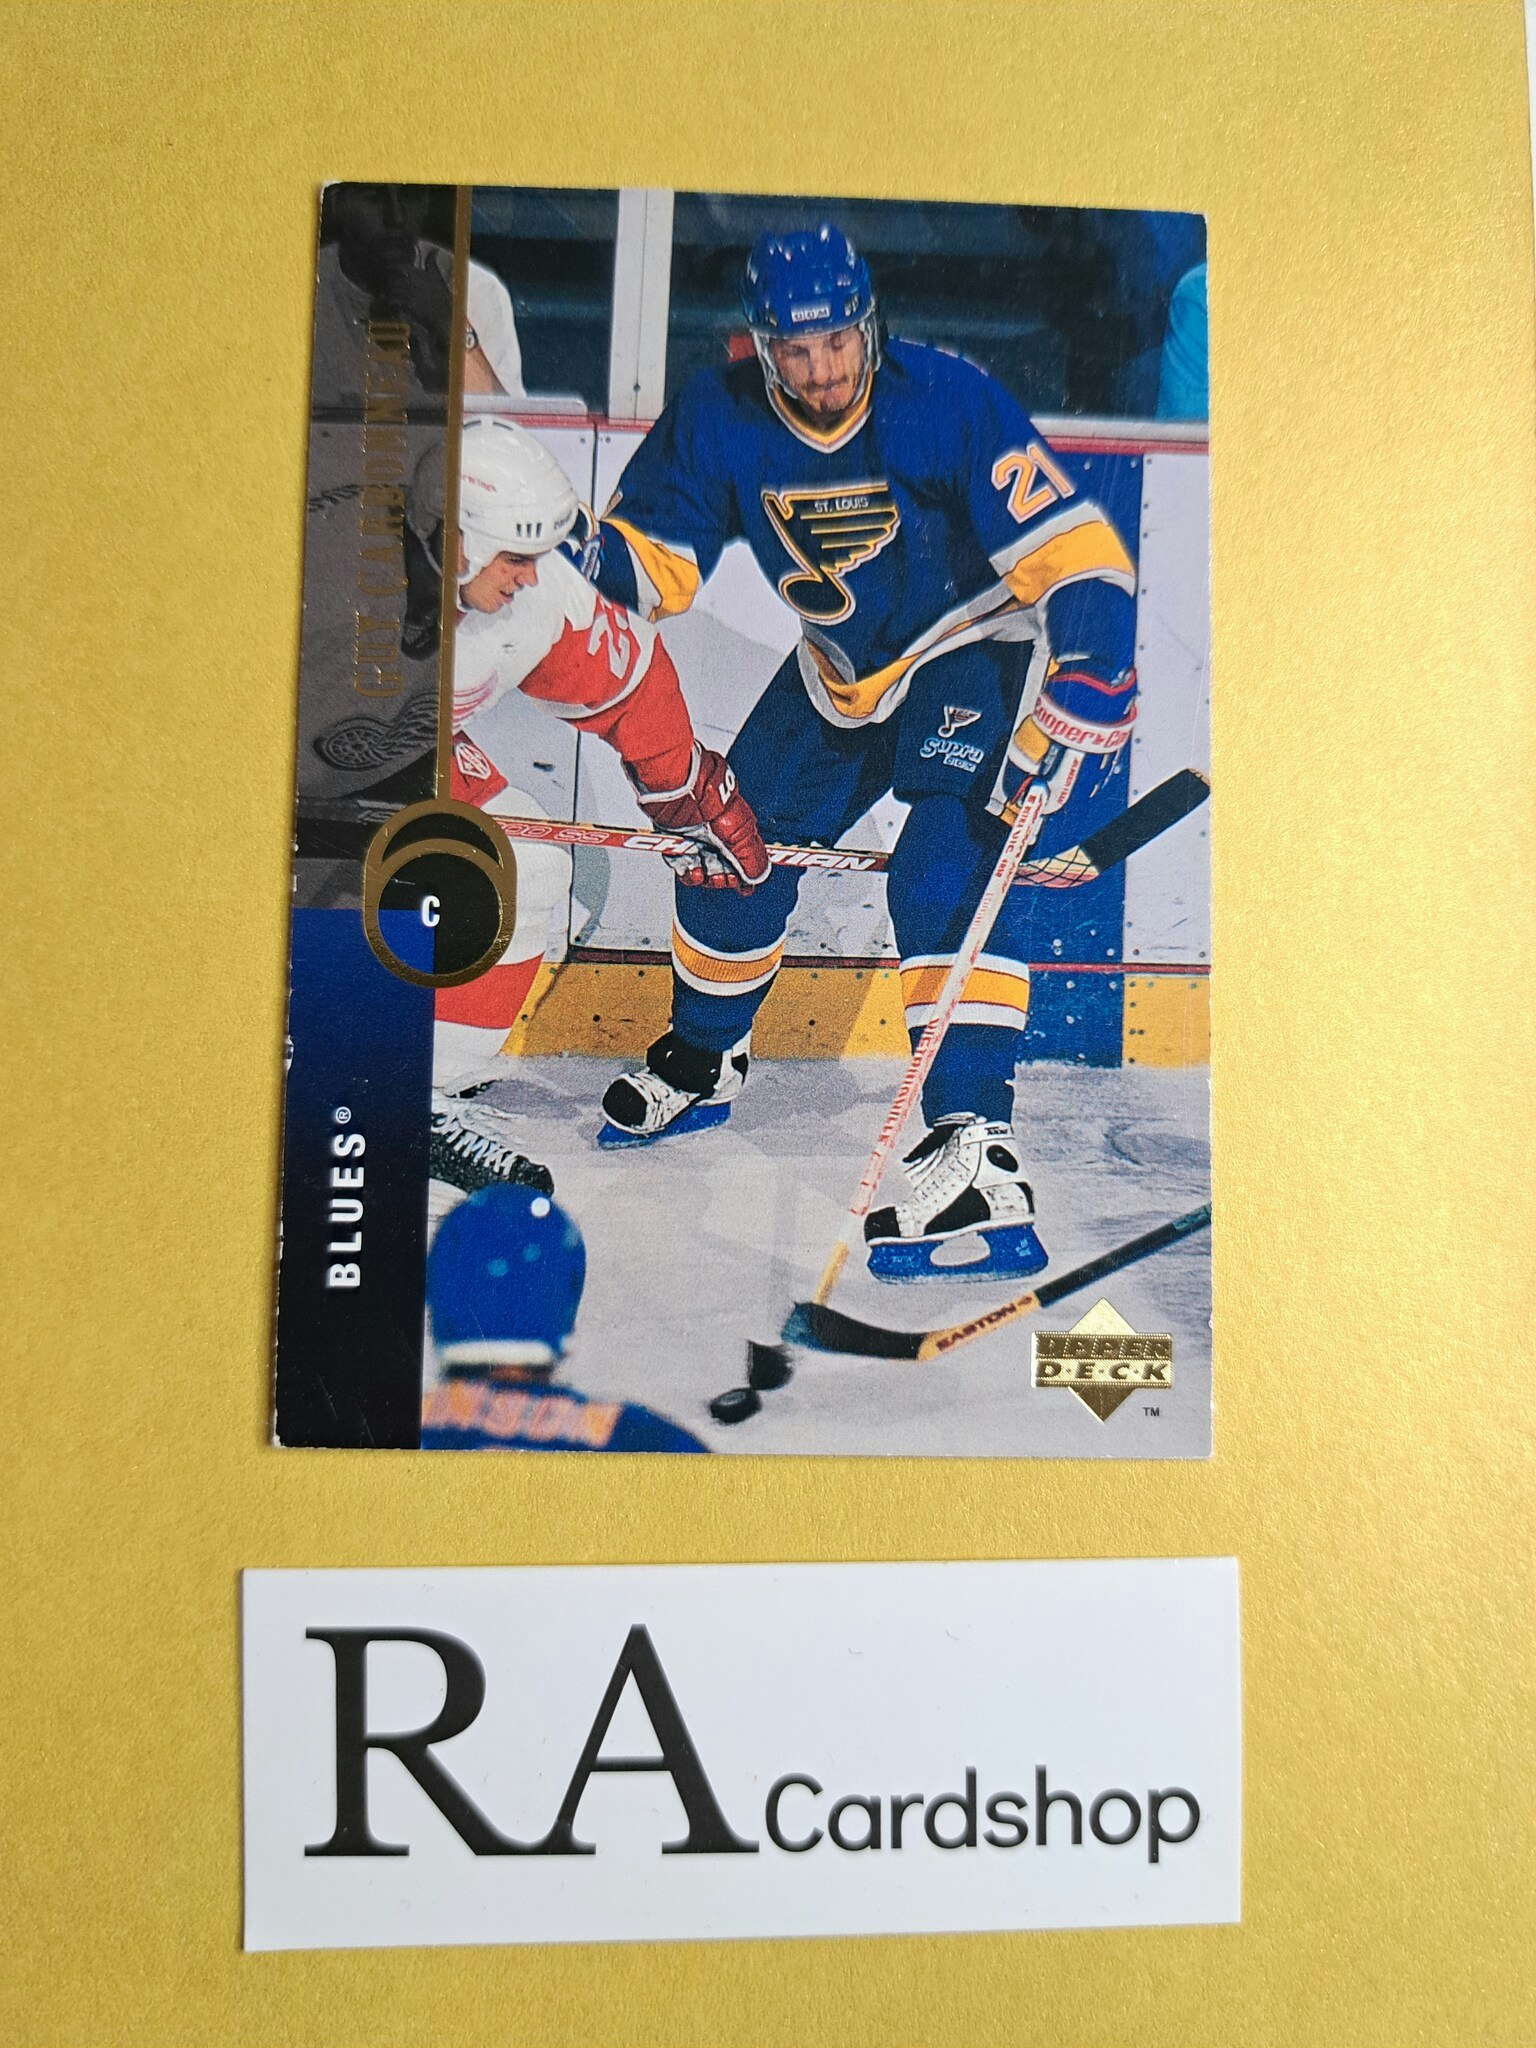 Guy Carbonneau 94-95 Upper Deck #122 NHL Hockey